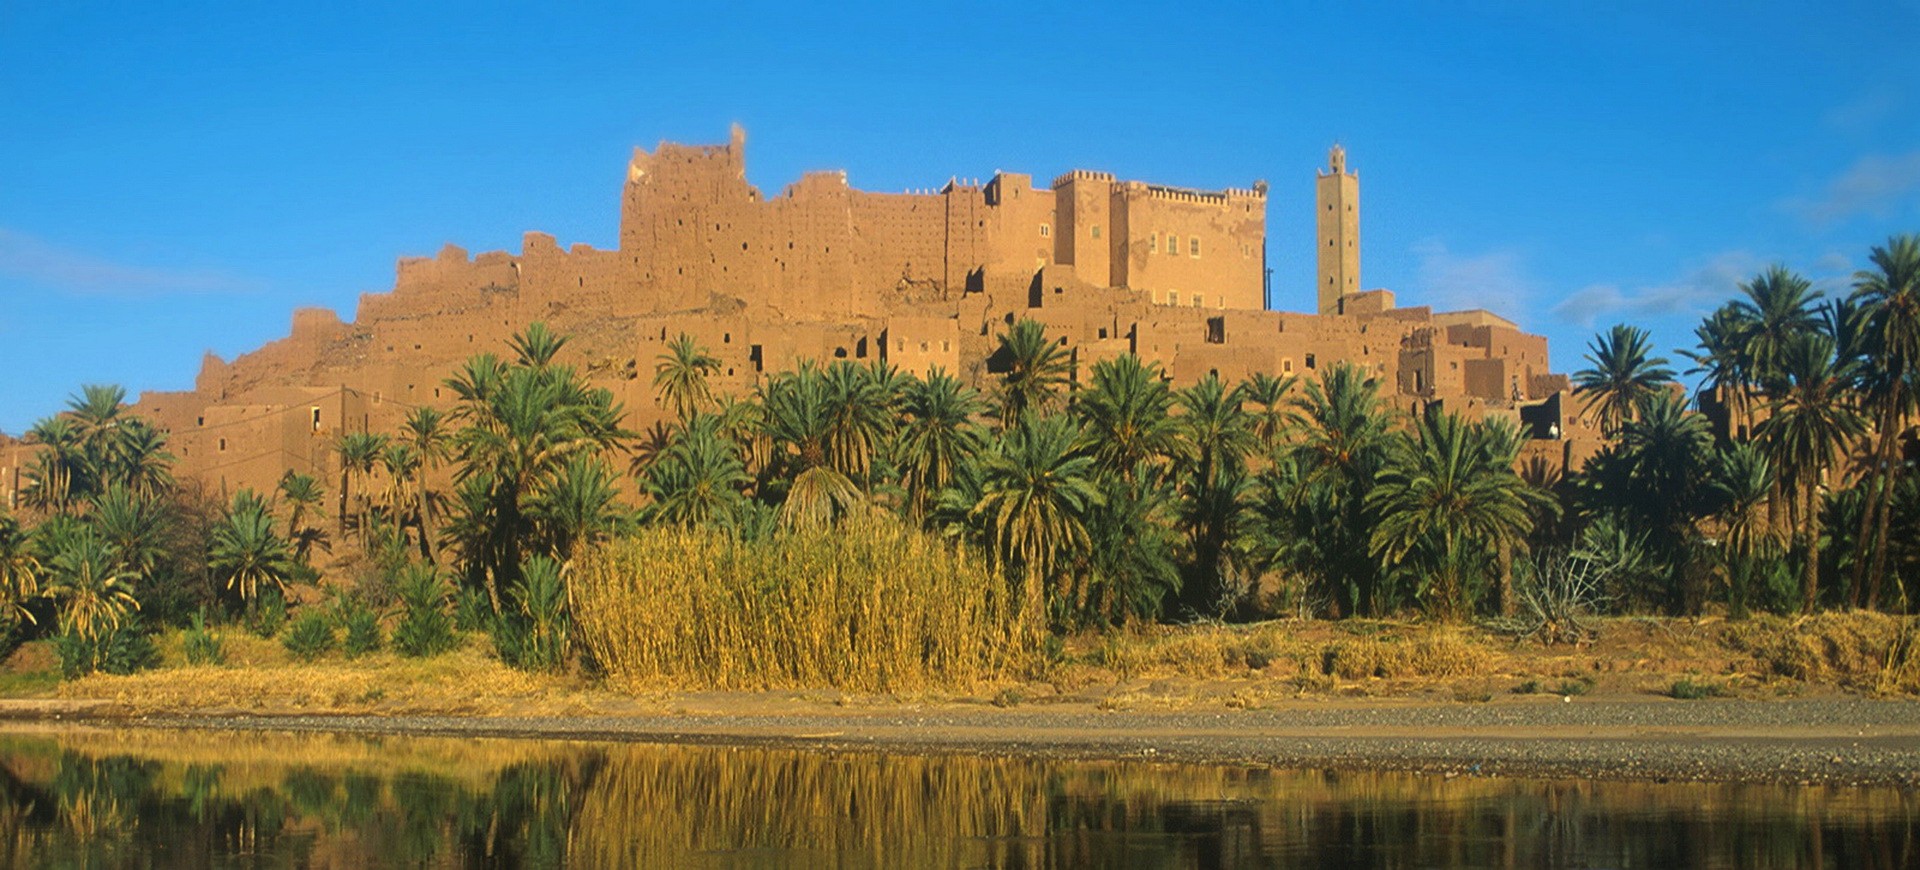 Maroc Ouarzazate Ait Ben Haddou 001